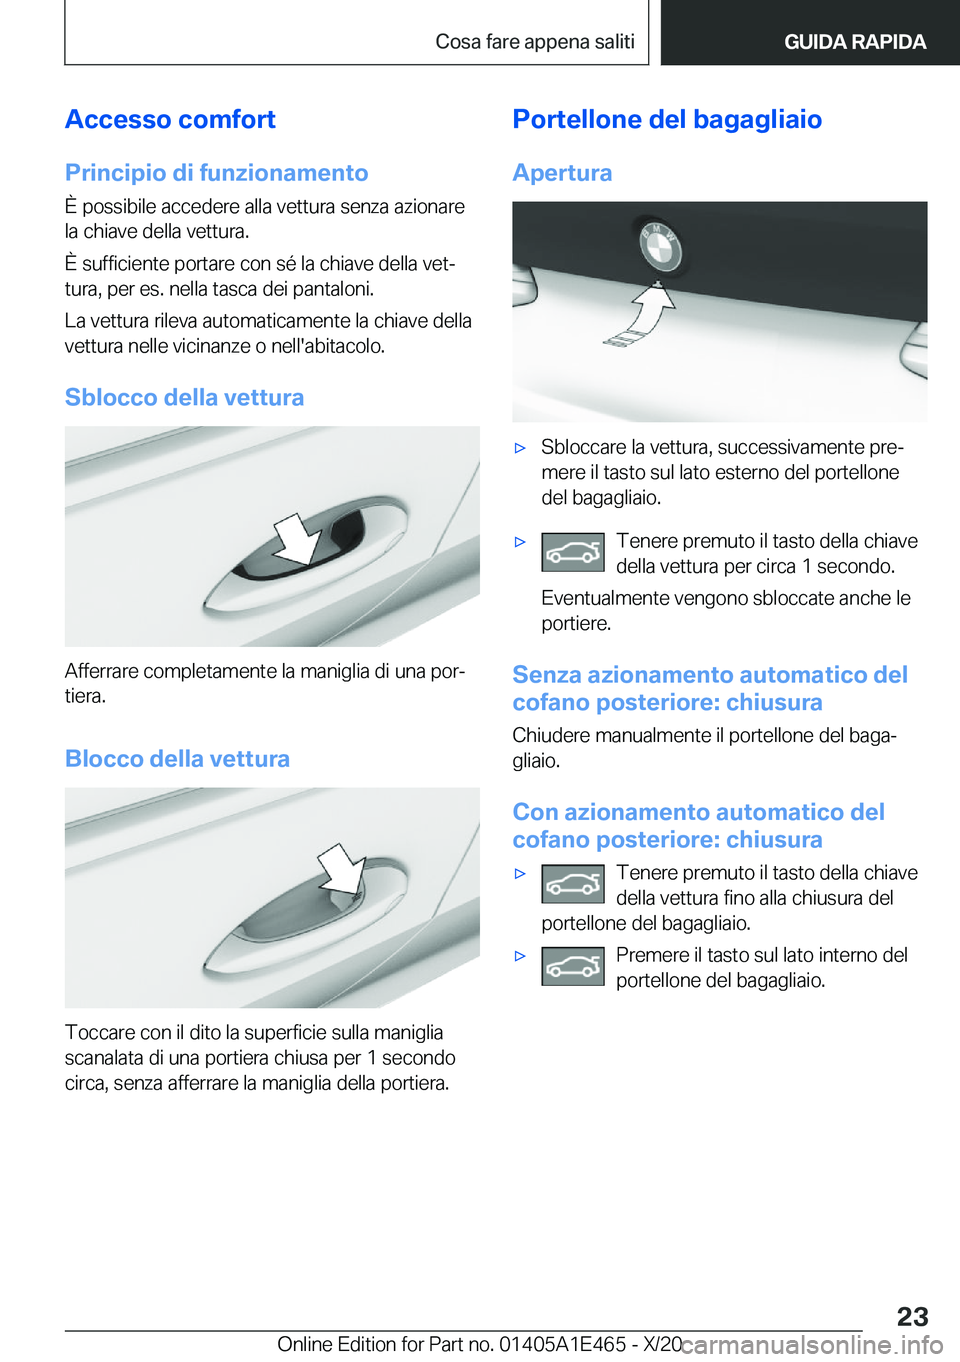 BMW M3 2021  Libretti Di Uso E manutenzione (in Italian) �A�c�c�e�s�s�o��c�o�m�f�o�r�t
�P�r�i�n�c�i�p�i�o��d�i��f�u�n�z�i�o�n�a�m�e�n�t�o �